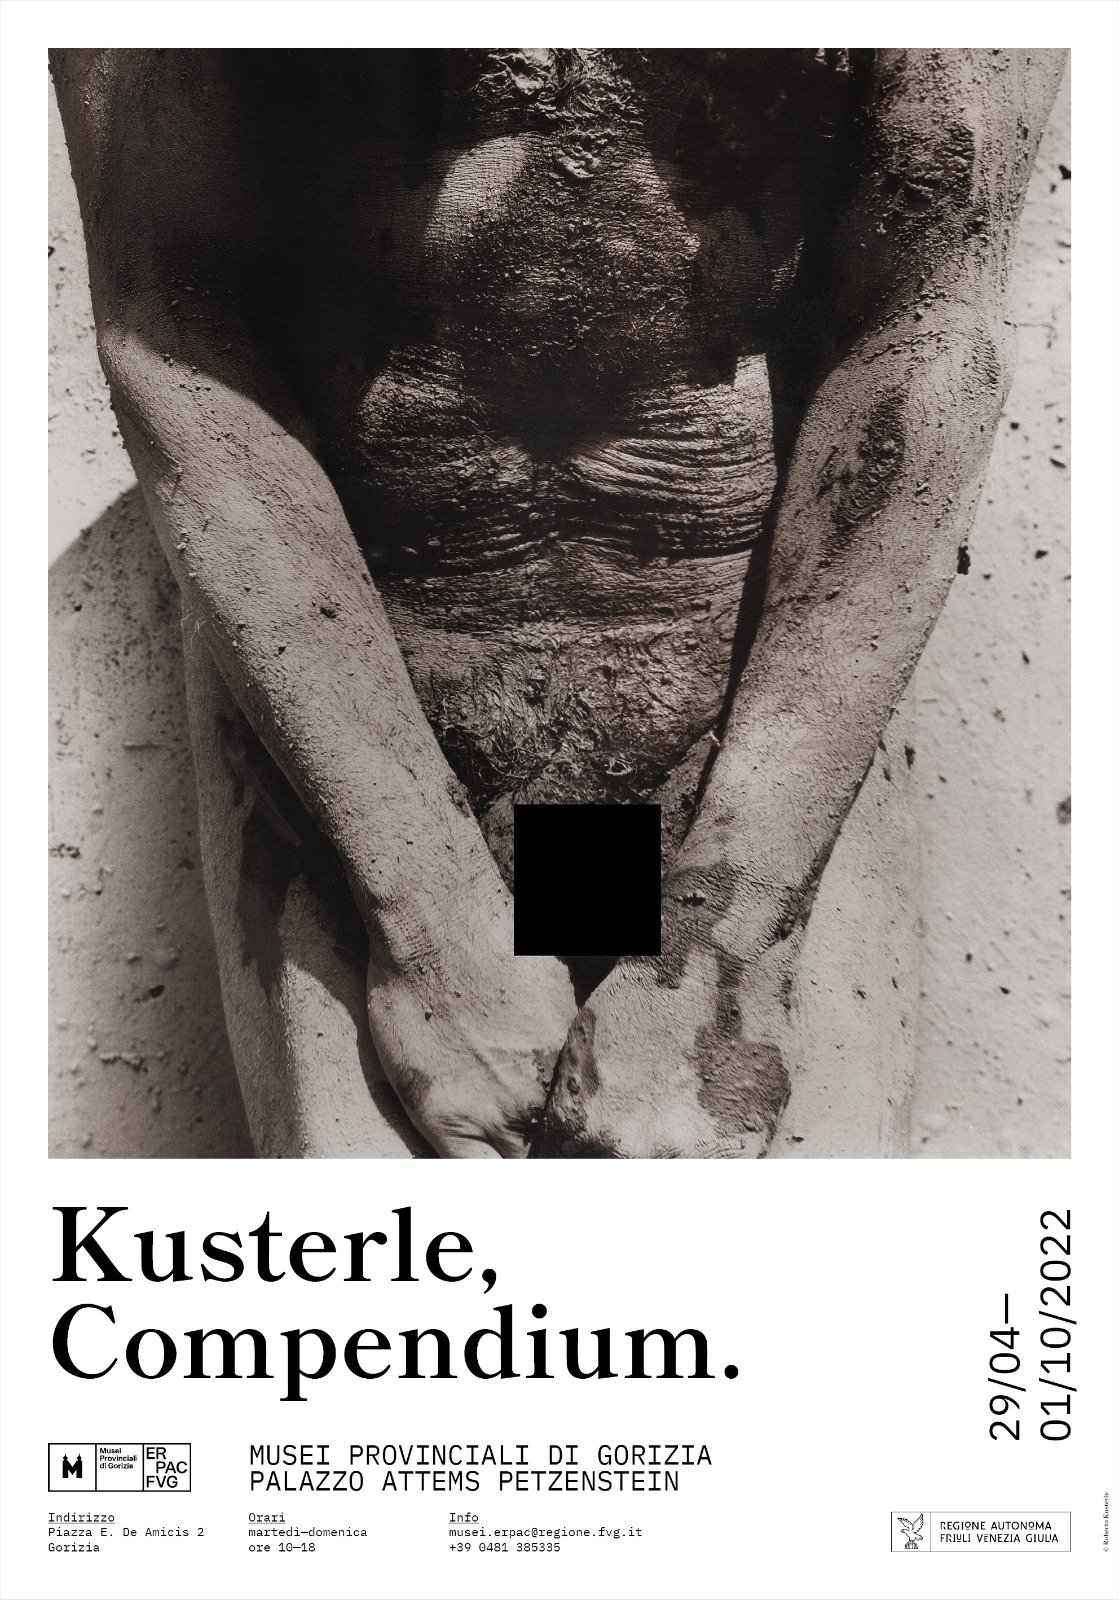 Roberto Kusterle - Compendium